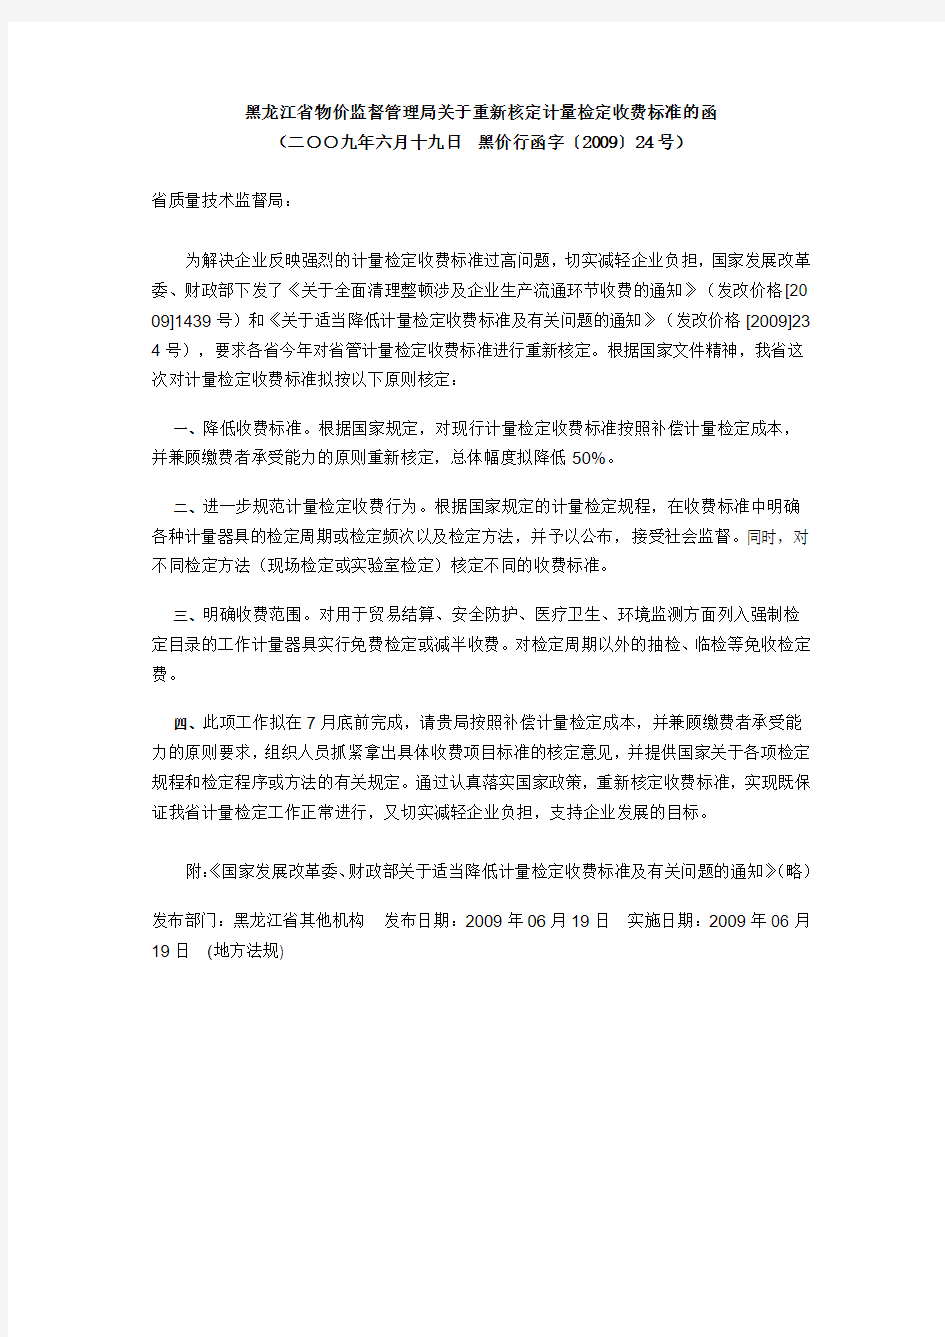 黑龙江省物价监督管理局关于重新核定计量检定收费标准的函1